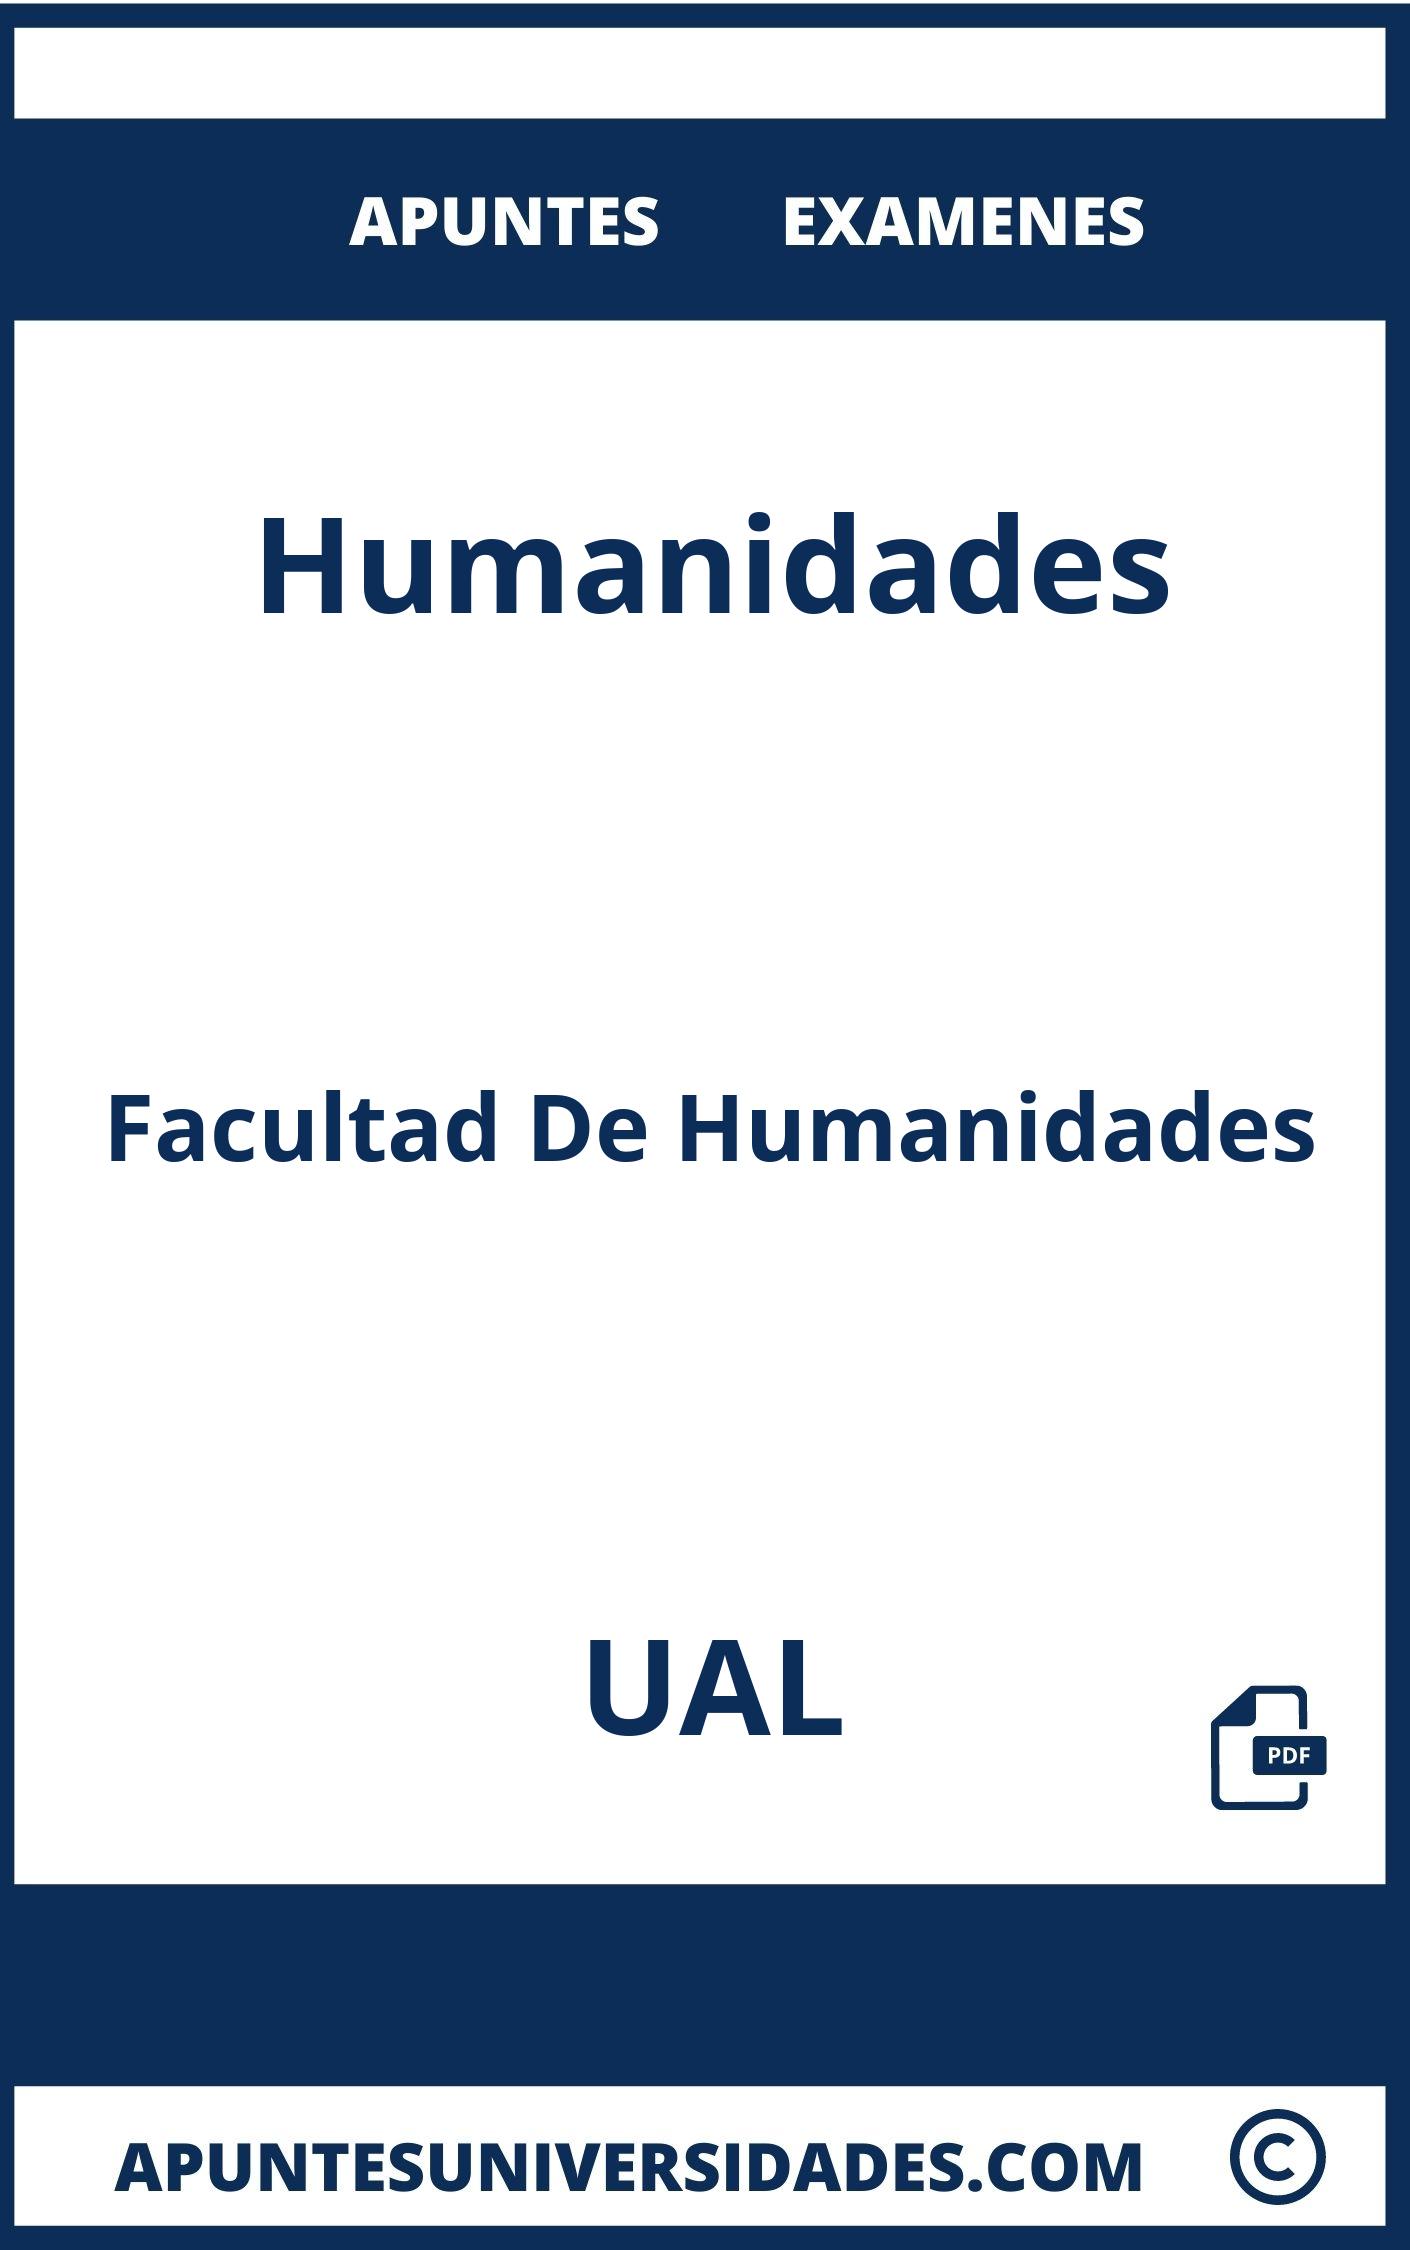 Apuntes y Examenes Humanidades UAL